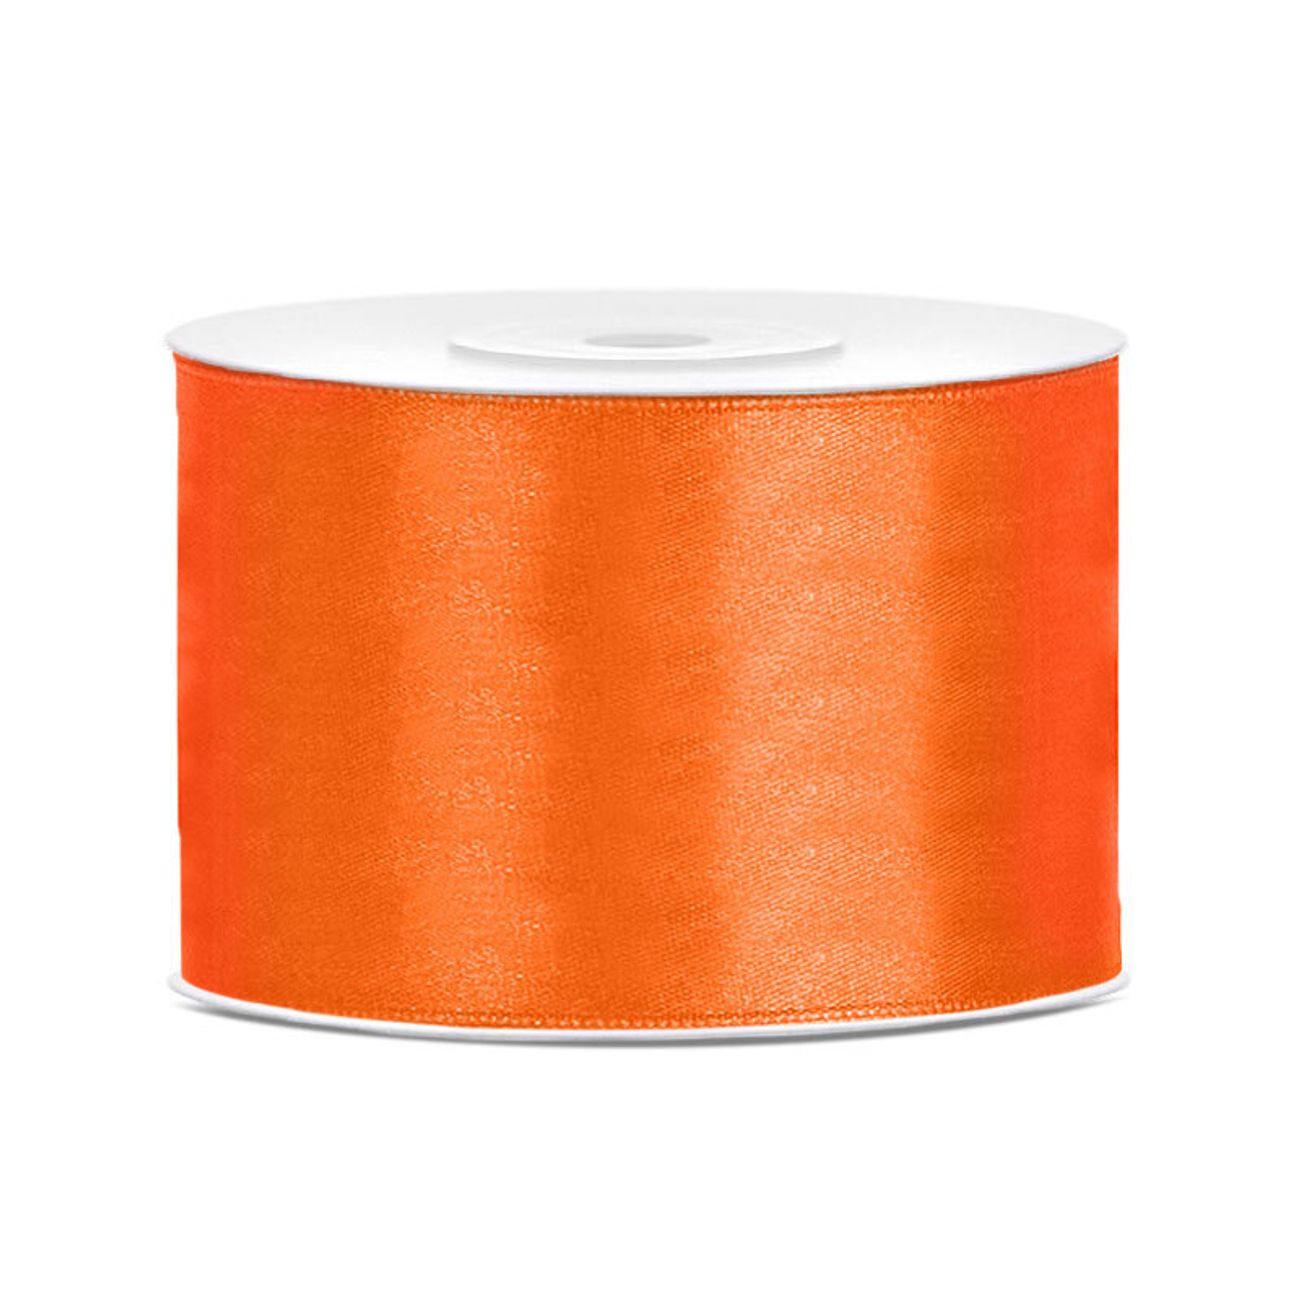 satinband-orange-44707-9